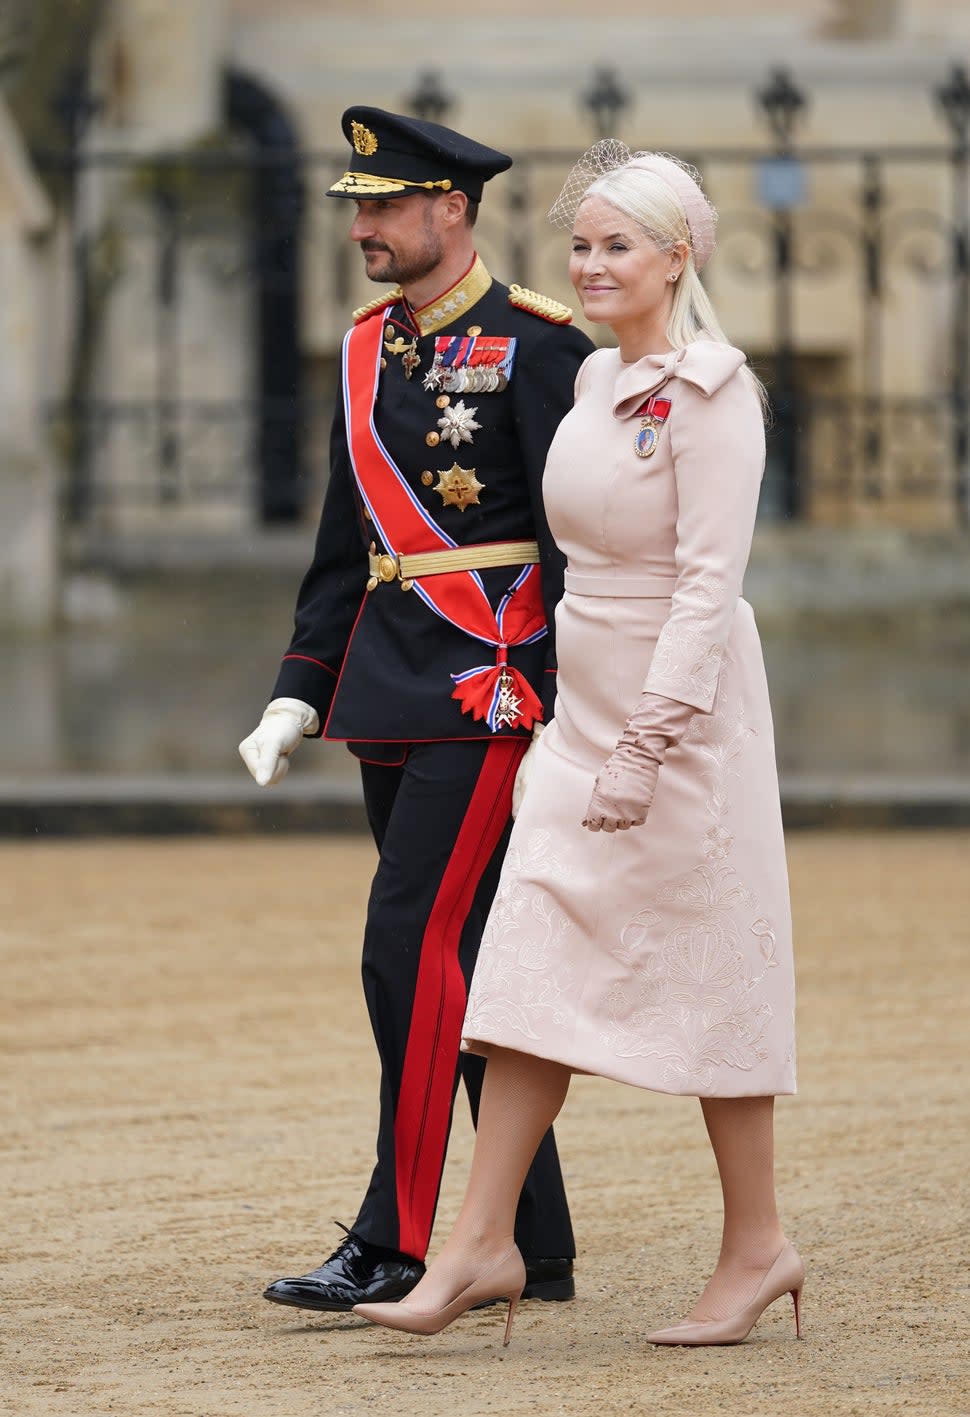 Crown Prince Haakon and Crown Princess Mette-Marit of Norway